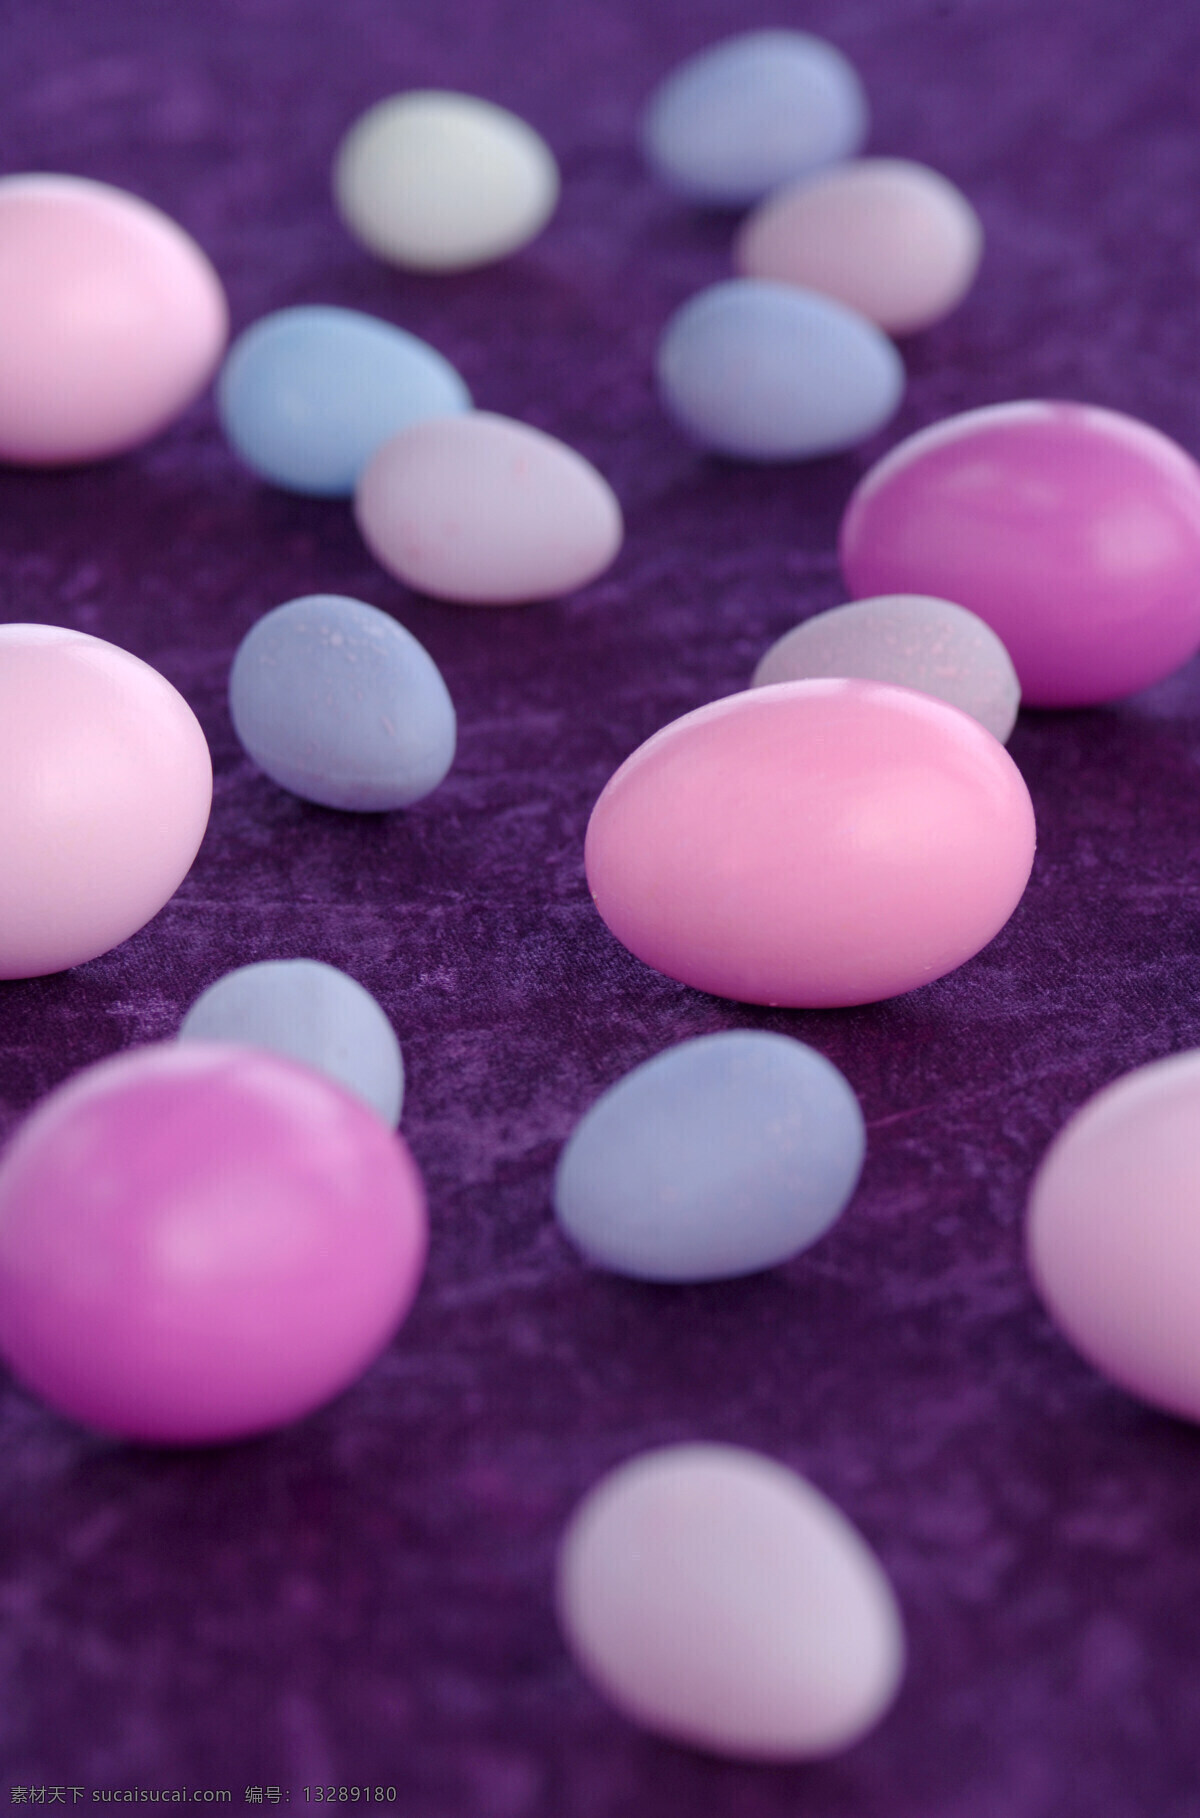 鸡蛋 鸽子 蛋 鸽子蛋 鹌鹑蛋 复活节彩蛋 彩色鸡蛋 蛋类 复活节素材 鸡蛋摄影 食材原料 餐饮美食